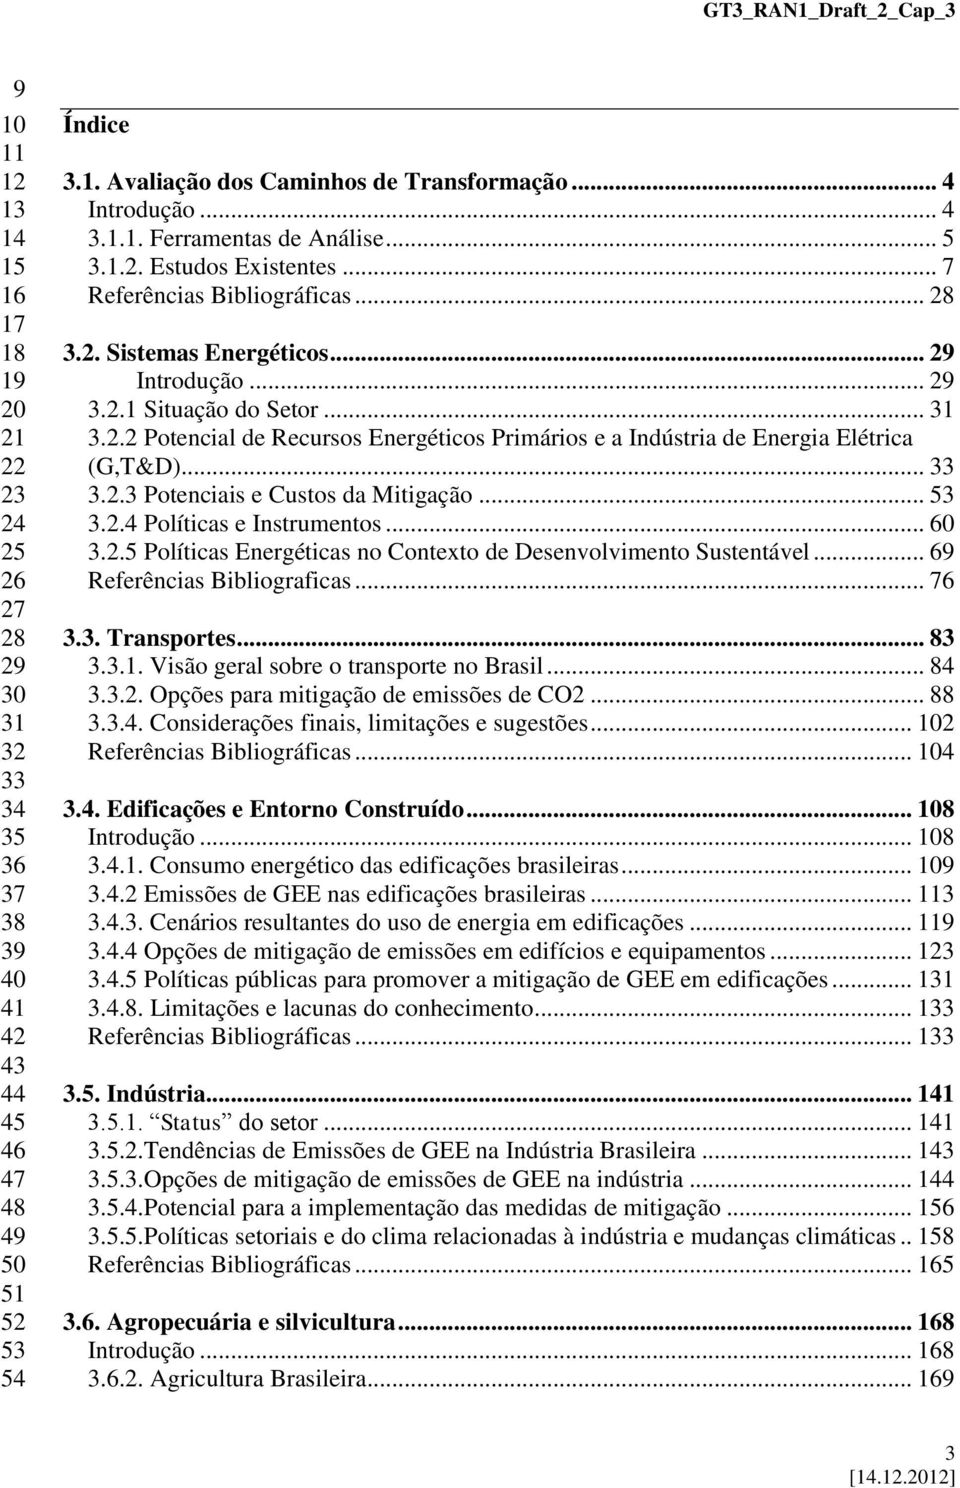 2.2 Potencial de Recursos Energéticos Primários e a Indústria de Energia Elétrica (G,T&D)... 33 3.2.3 Potenciais e Custos da Mitigação... 53 3.2.4 Políticas e Instrumentos... 60 3.2.5 Políticas Energéticas no Contexto de Desenvolvimento Sustentável.